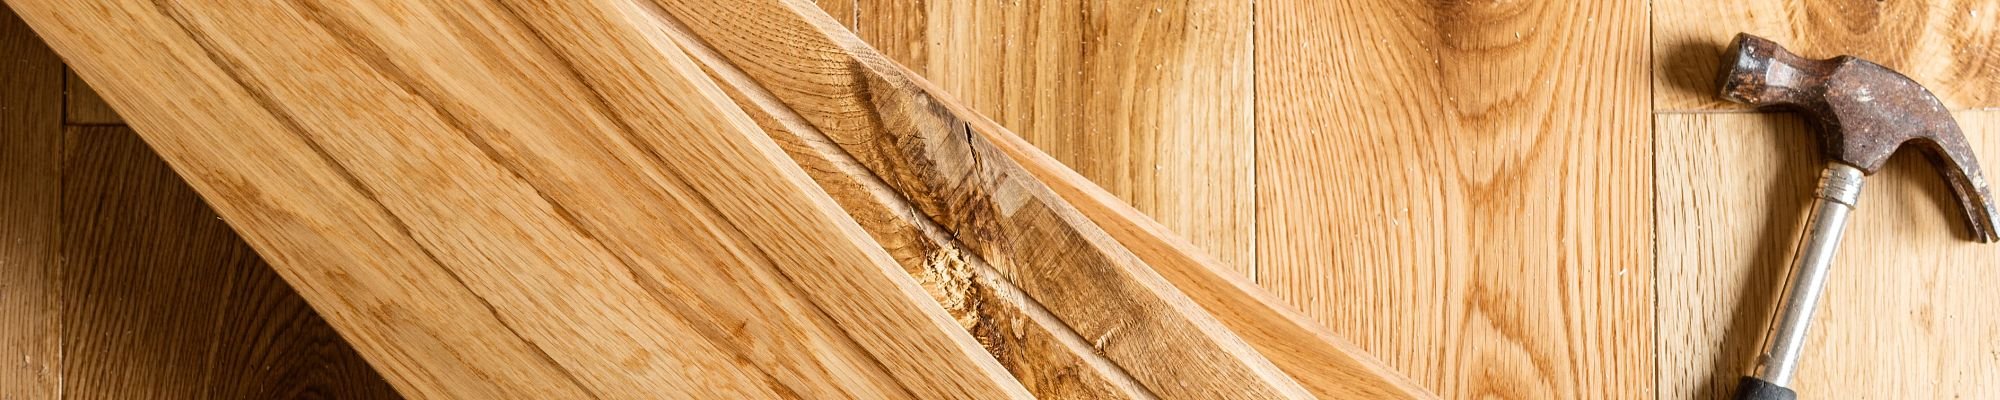 Hammer on hardwood planks from Southwest Floors in Seven Hills, OH